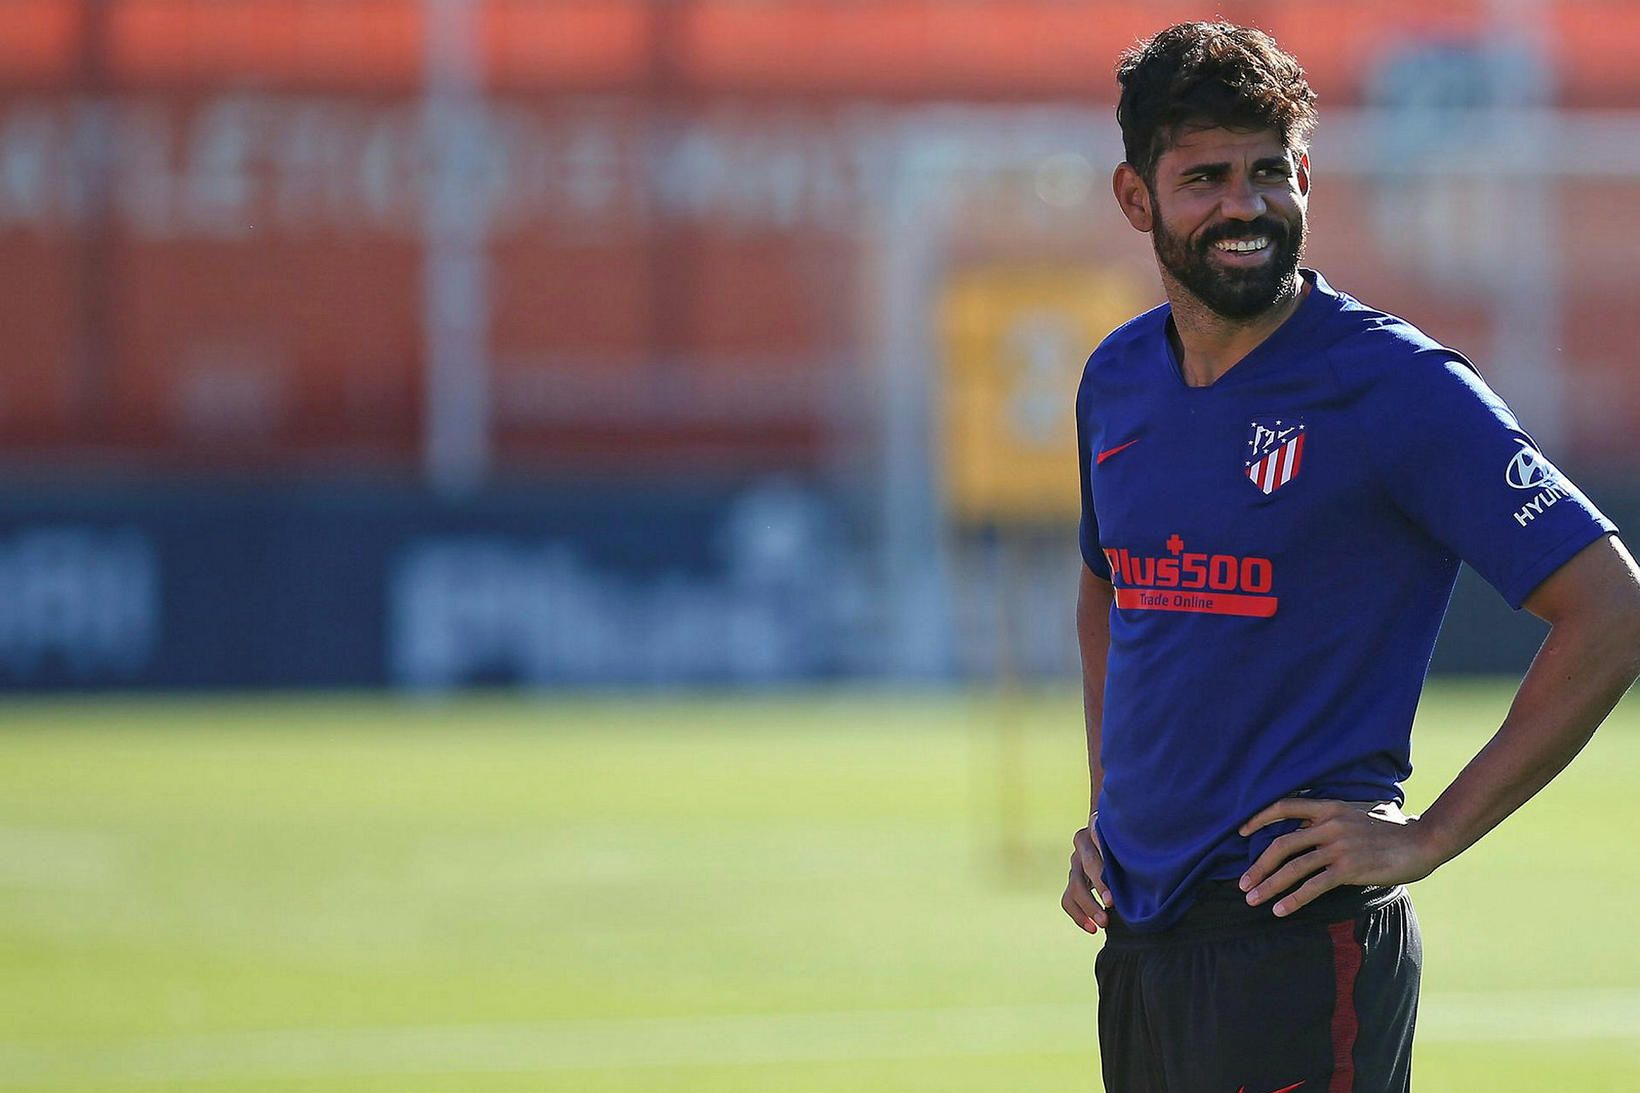 Diego Costa er mættur aftur til æfinga hjá Atlético Madríd.